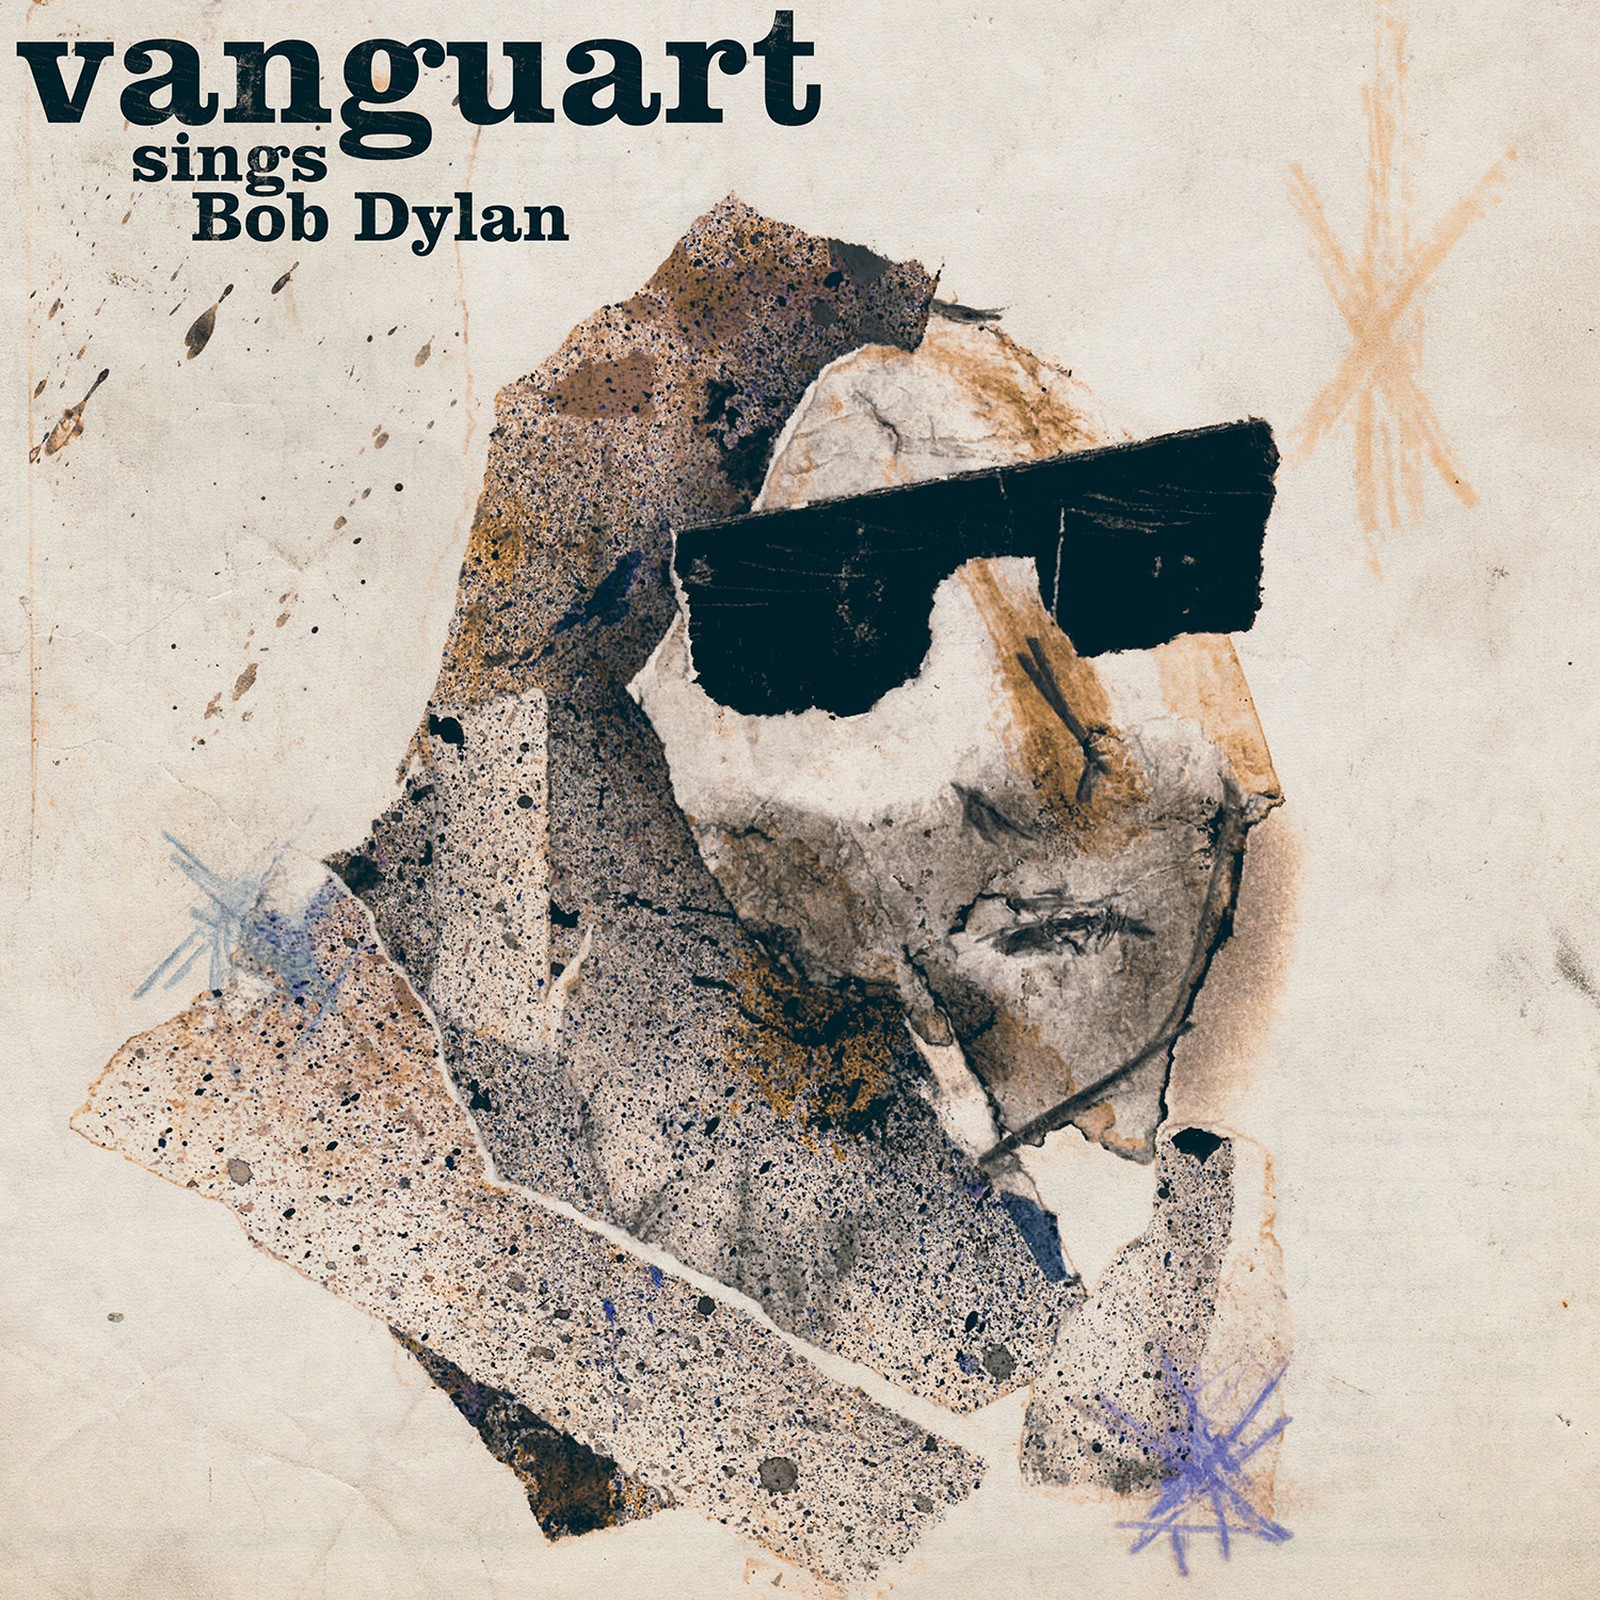  Exclusivo | Vanguart lança disco com releituras de Bob Dylan: “queríamos algo afetivo para quem ouvisse”